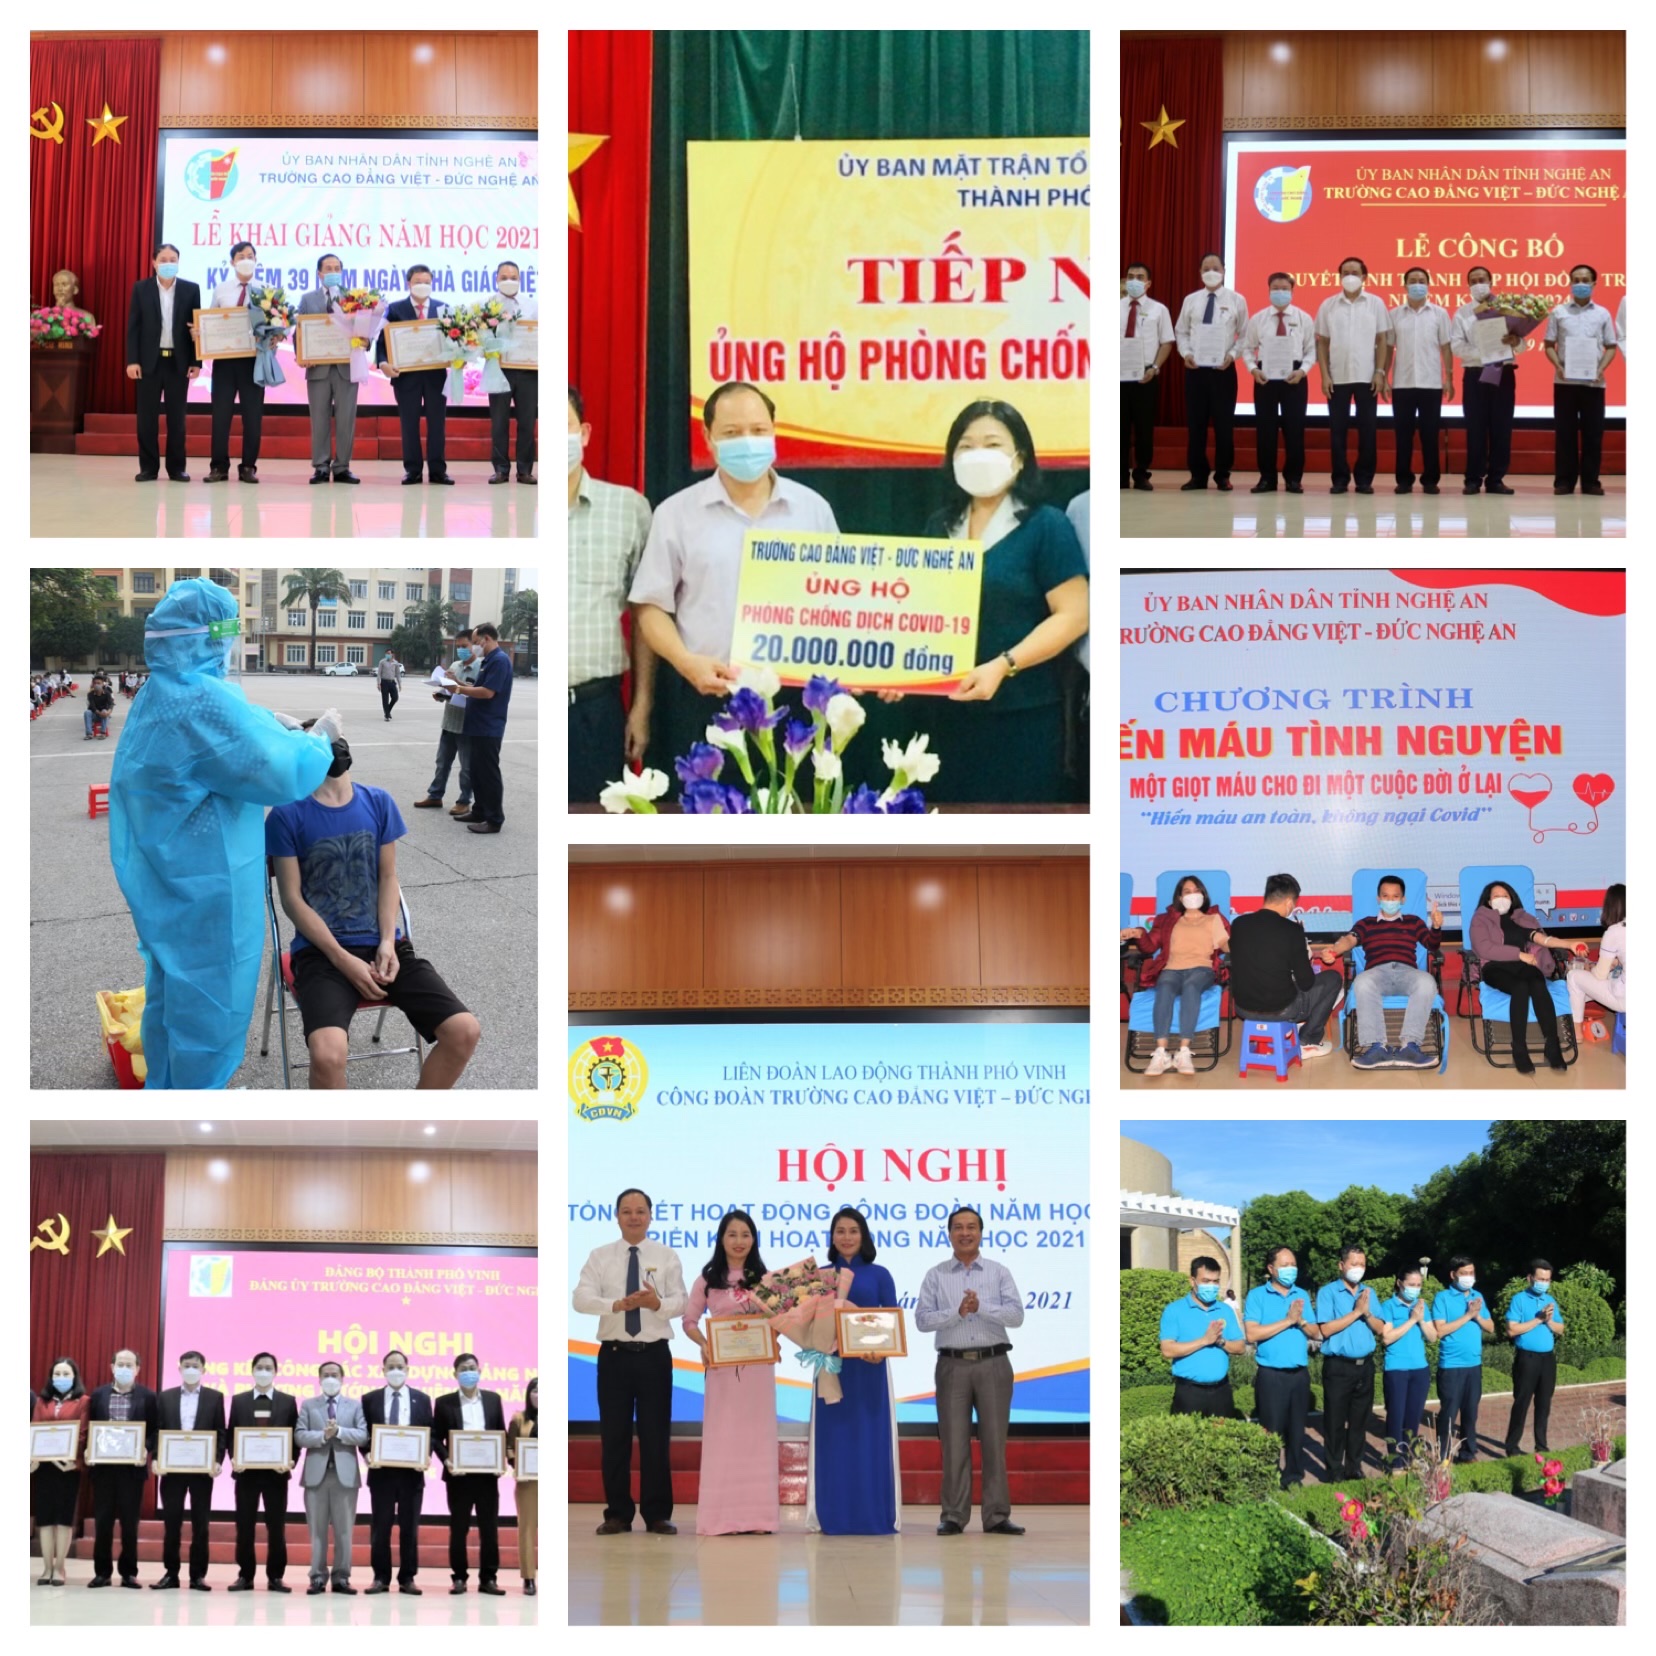 Những sự kiện nổi bật của Trường Cao đẳng Việt – Đức Nghệ An năm 2021